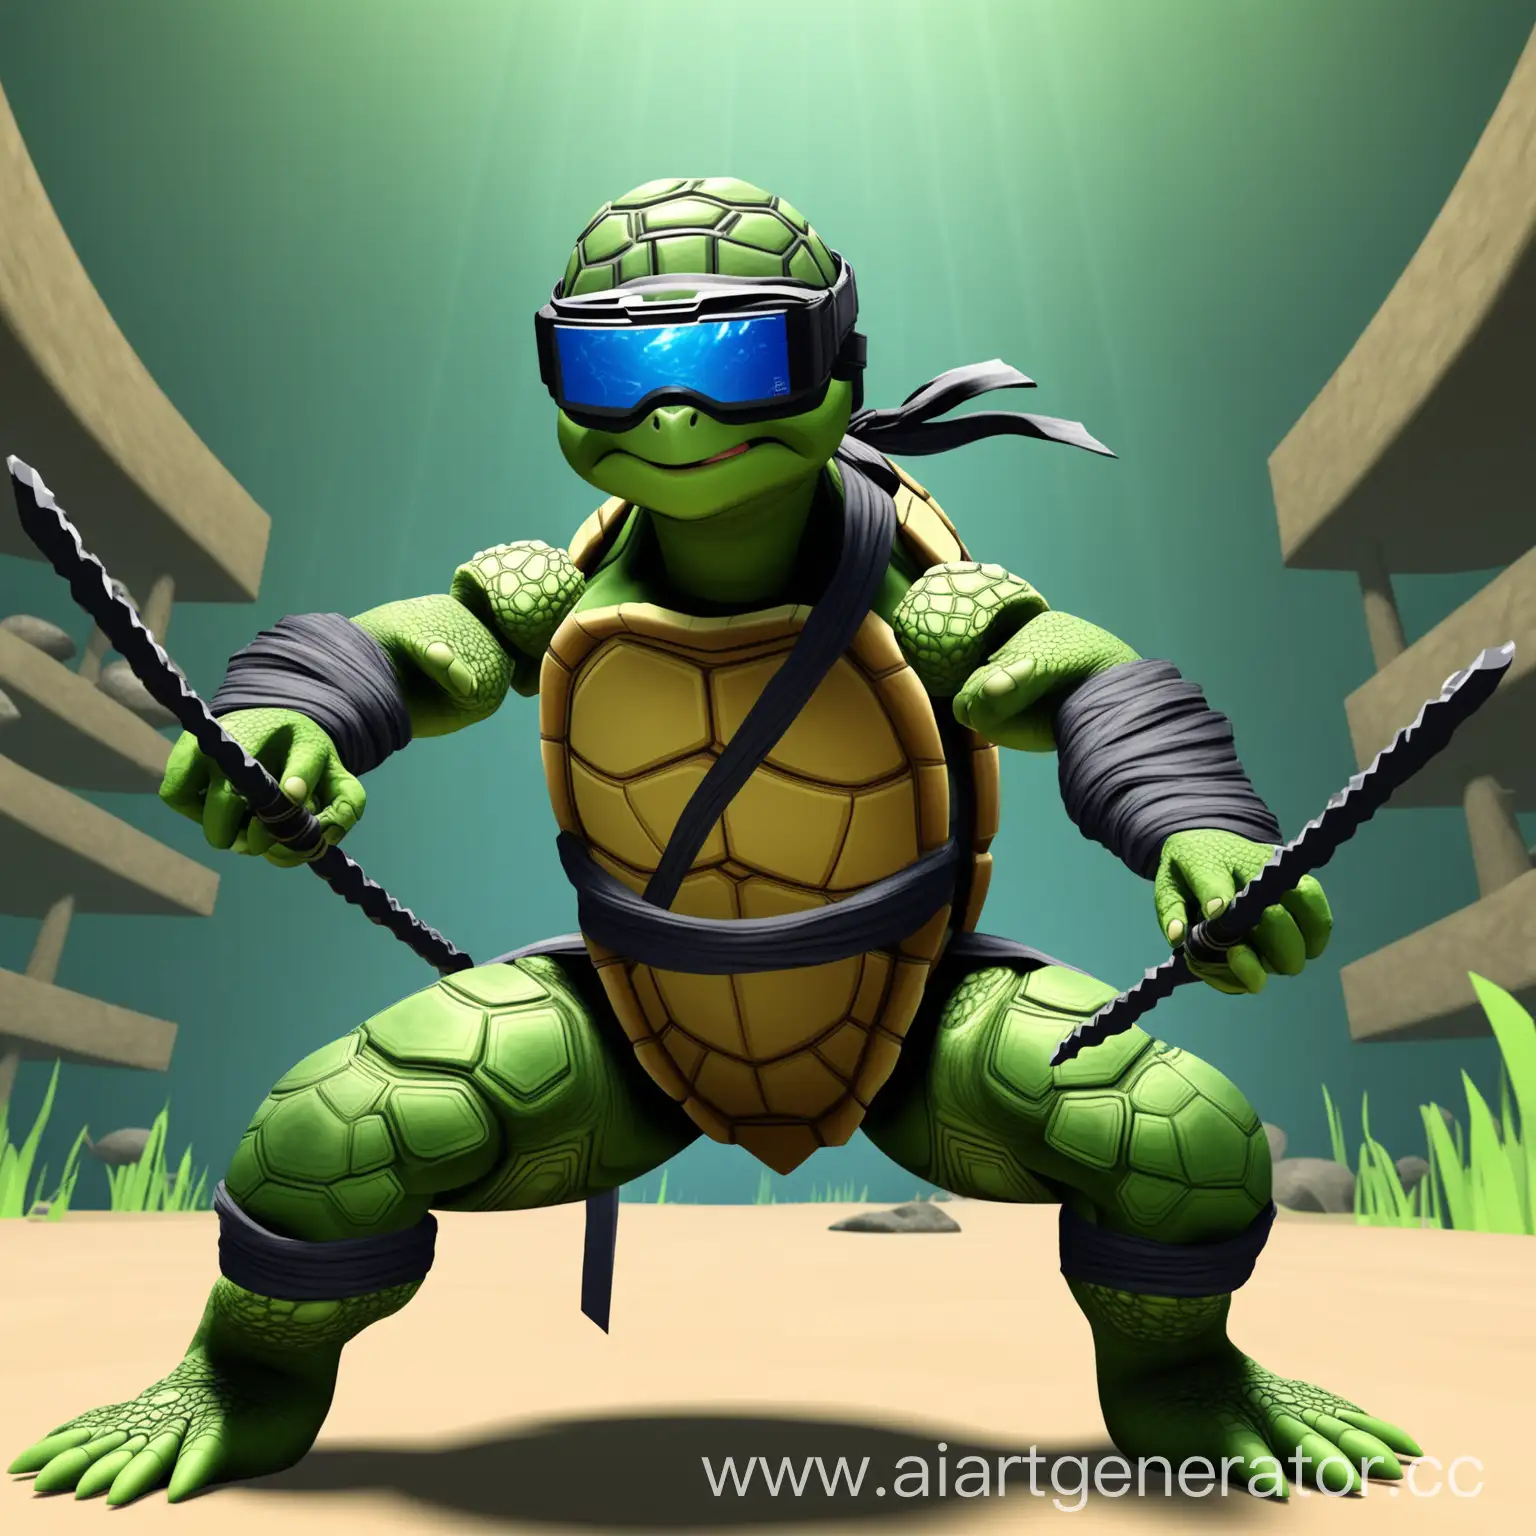 Turtle-Ninja in VR